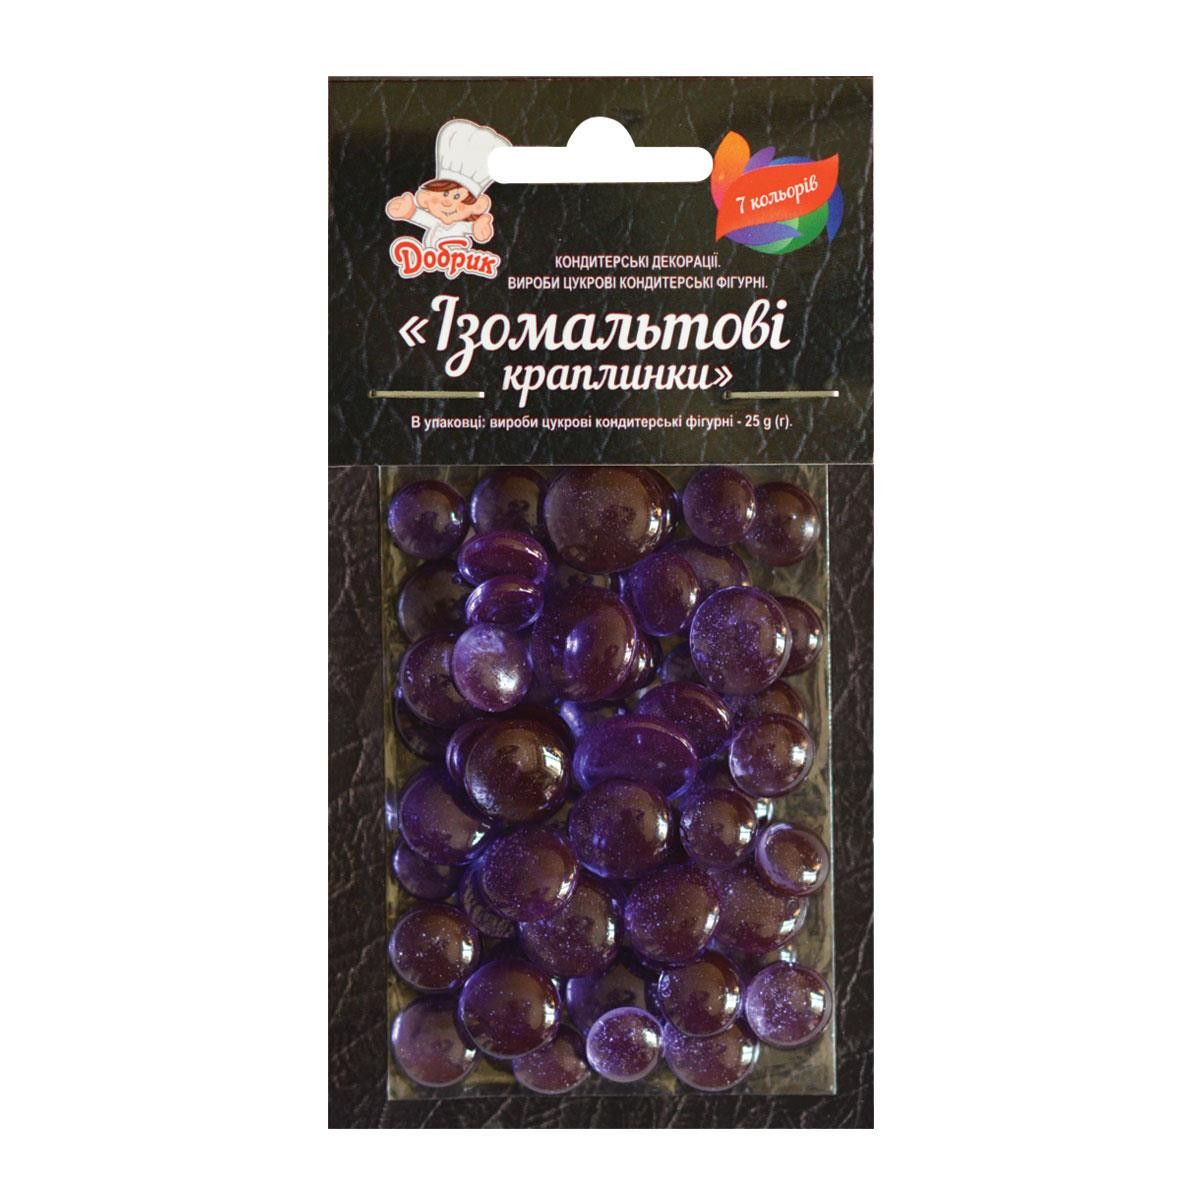 ⋗ Изомальтовые капли фиолетовые купить в Украине ➛ CakeShop.com.ua, фото